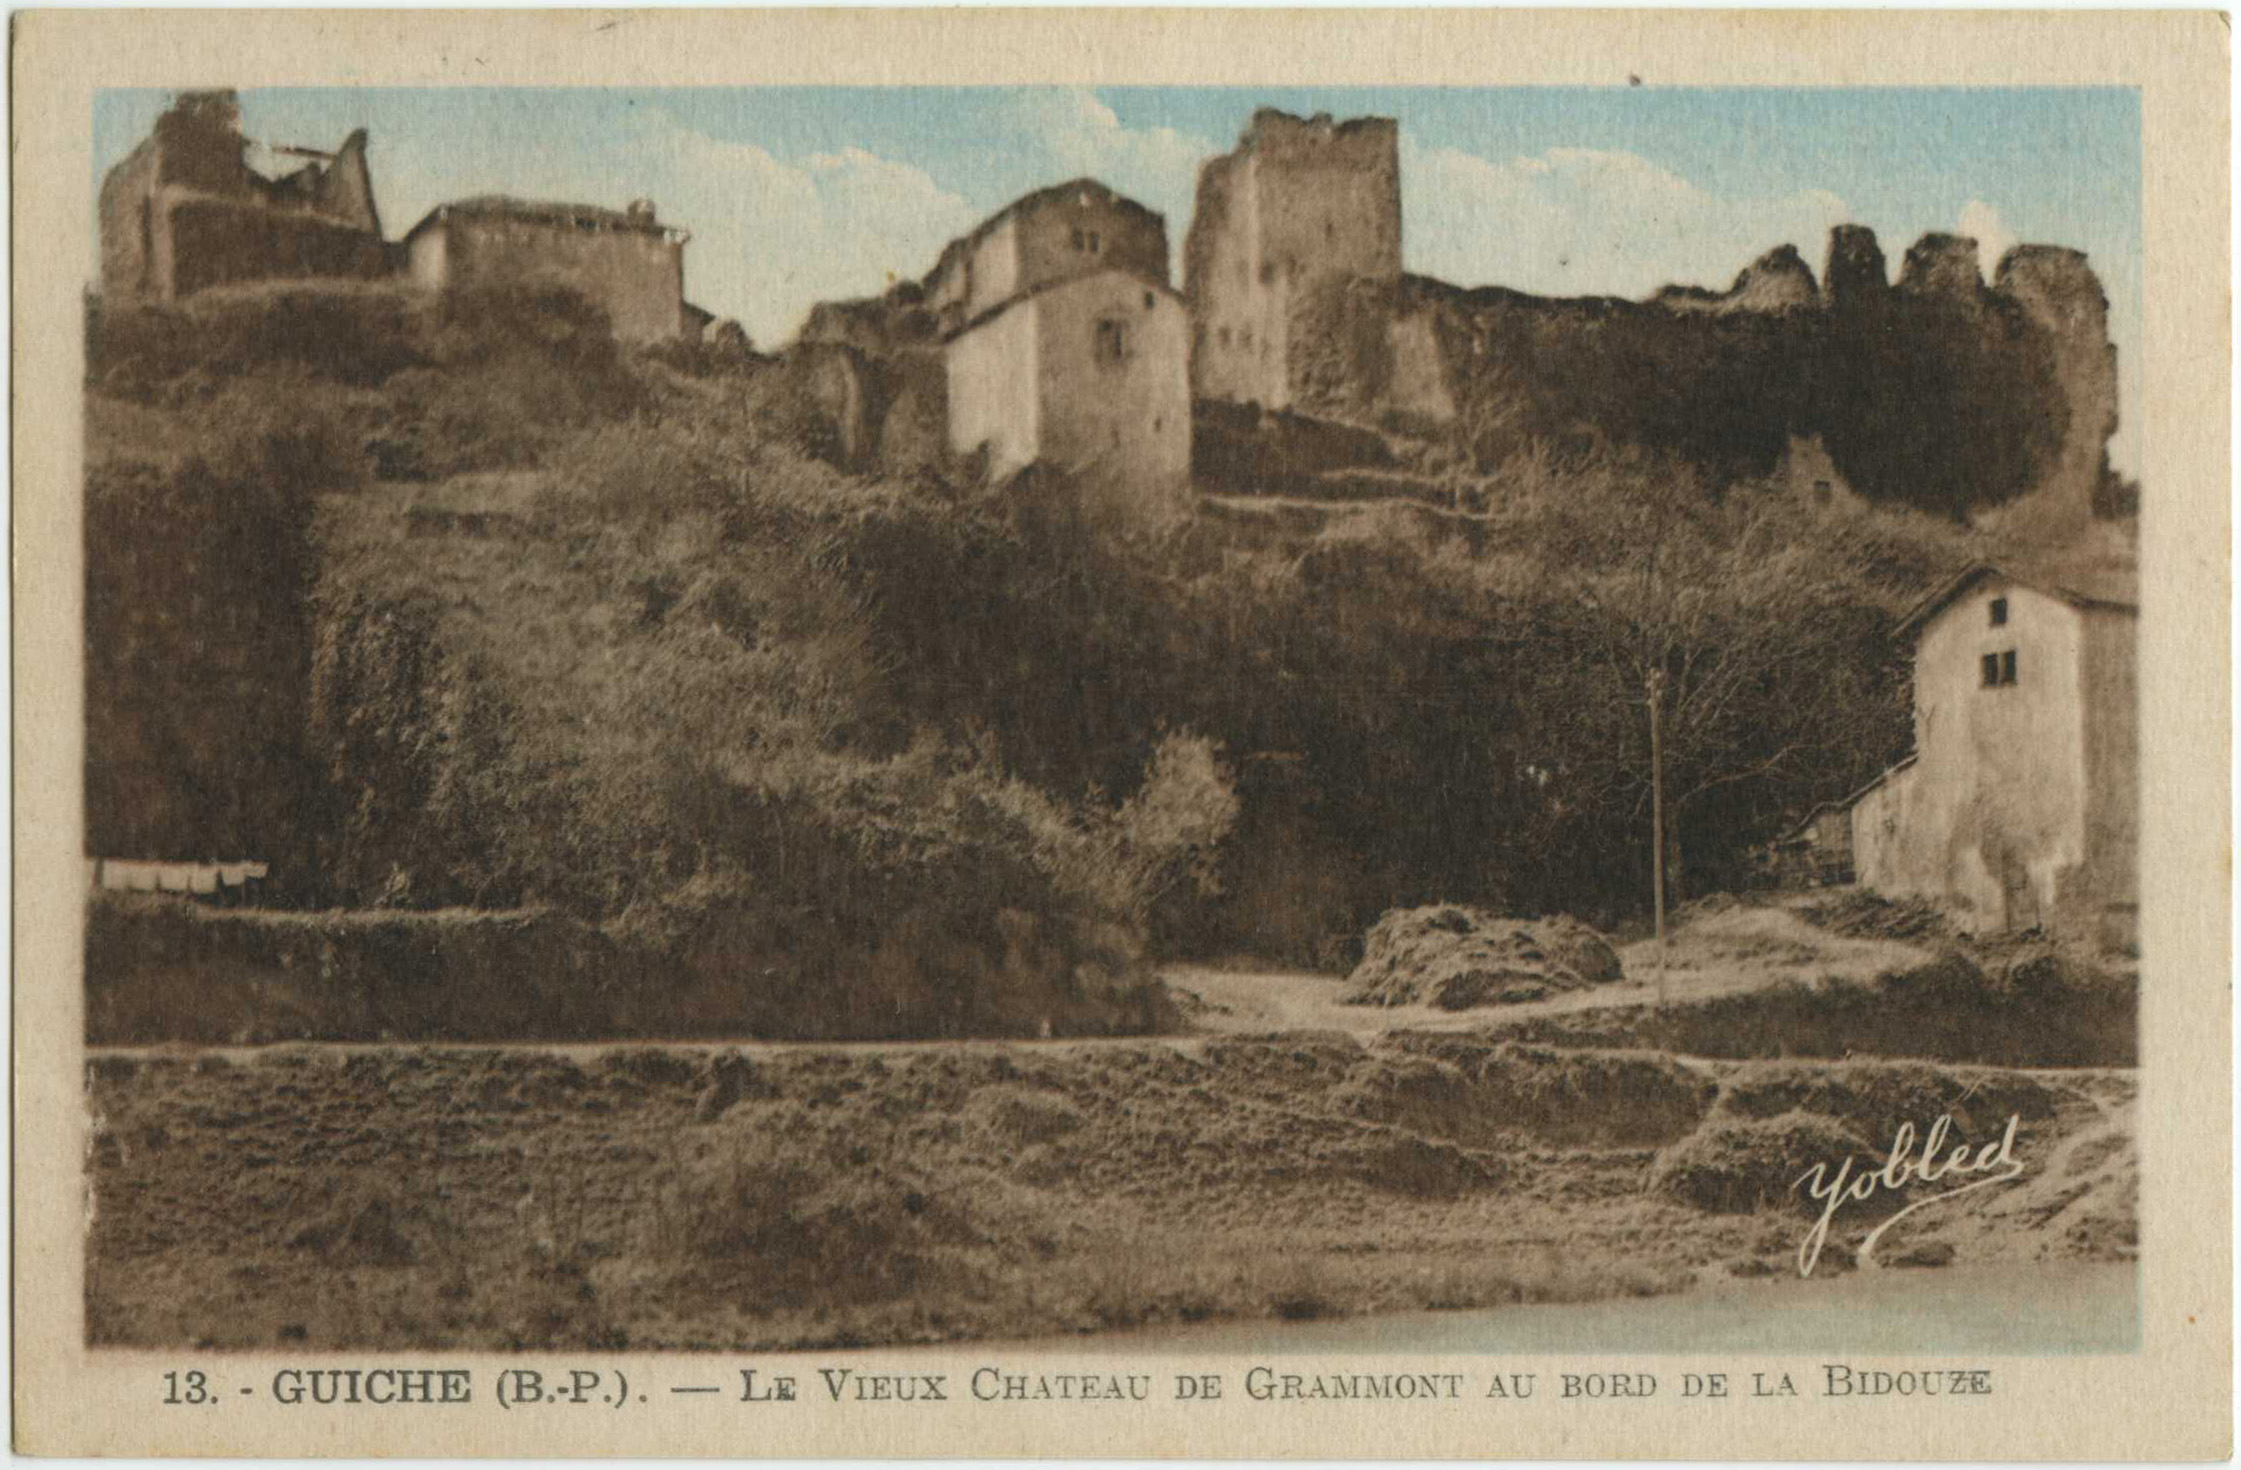 Guiche - Le Vieux Chateau de Grammont au bord de la Bidouze